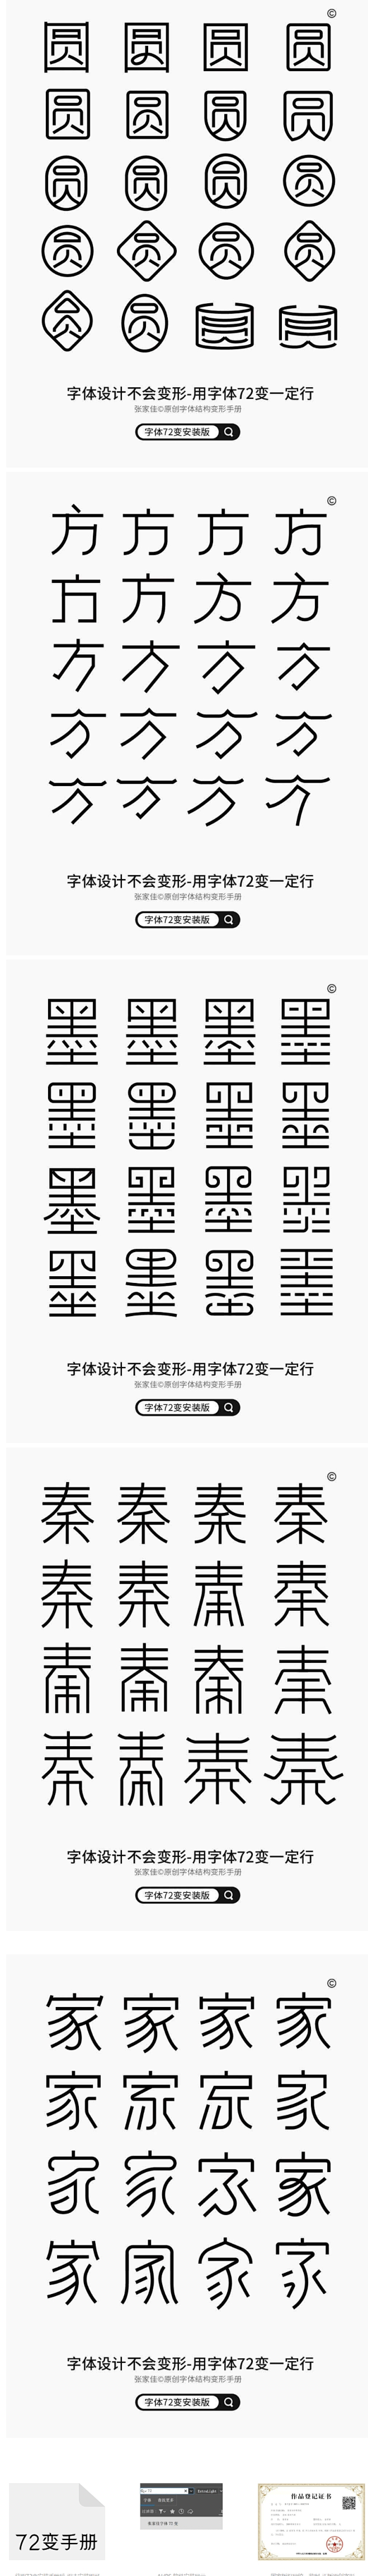 张家佳字体72变安装版下载-更新1683...